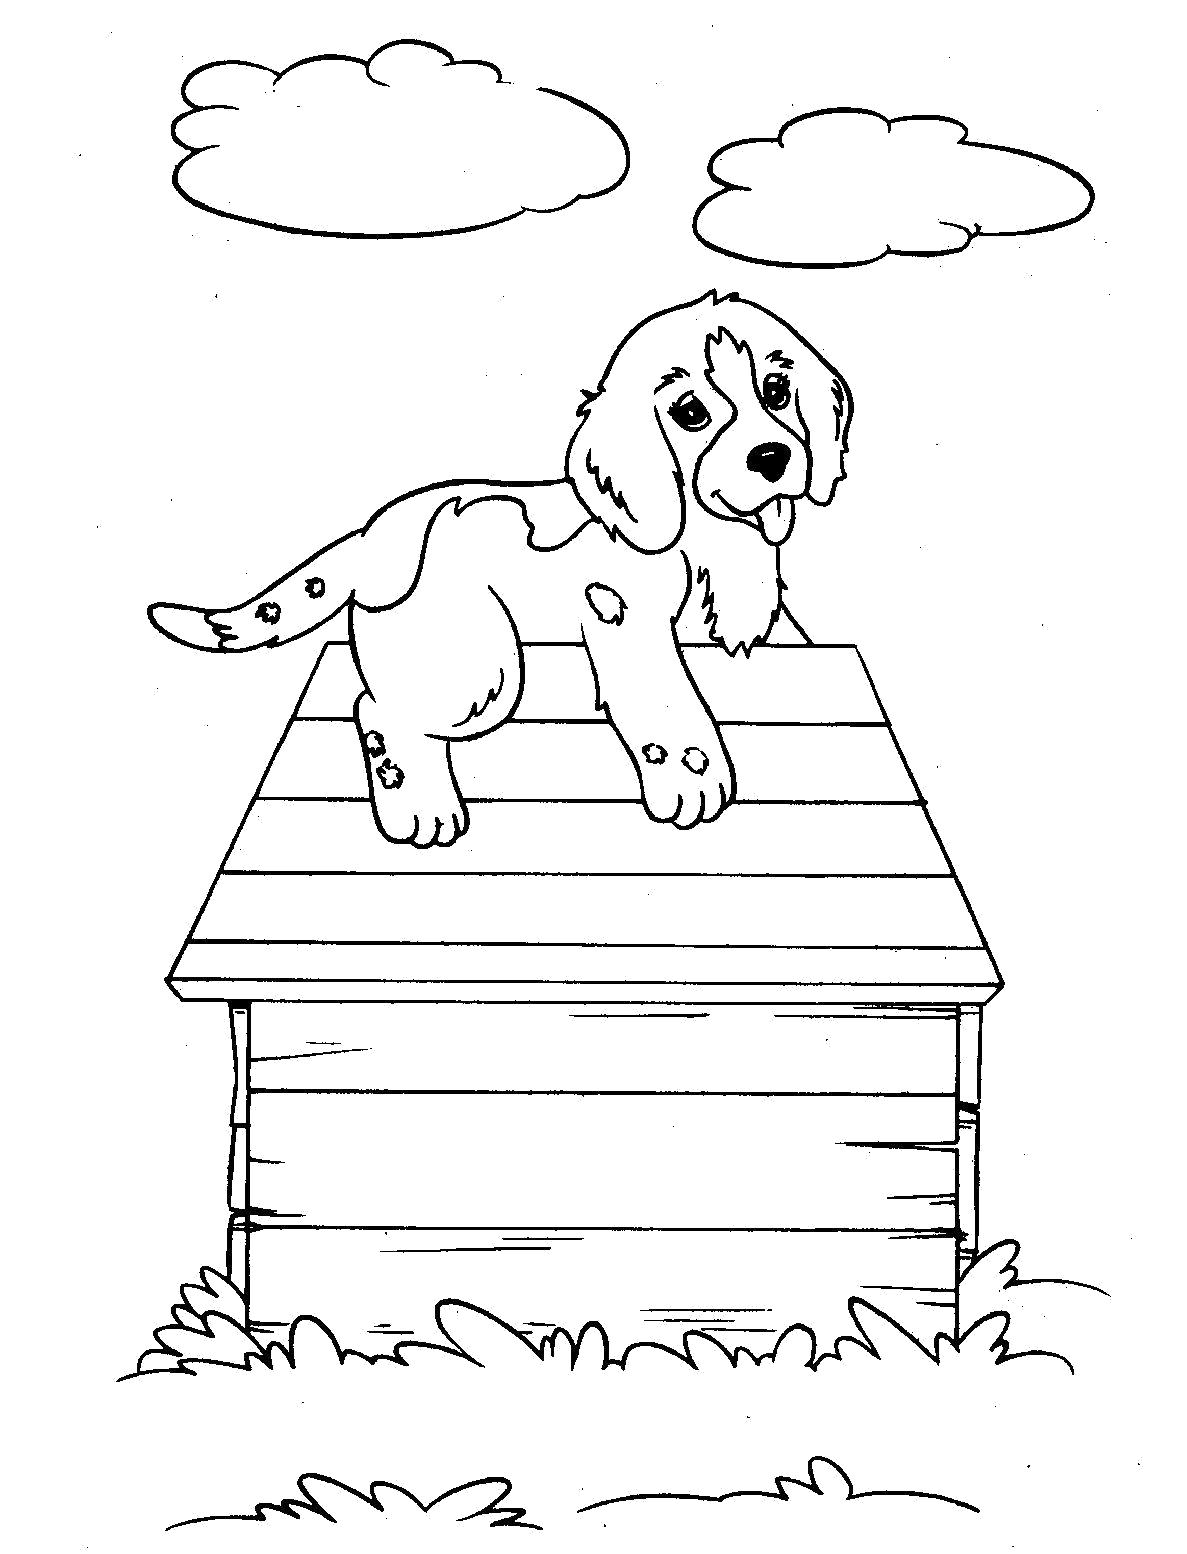 Раскраска собака на будке. Домашние животные